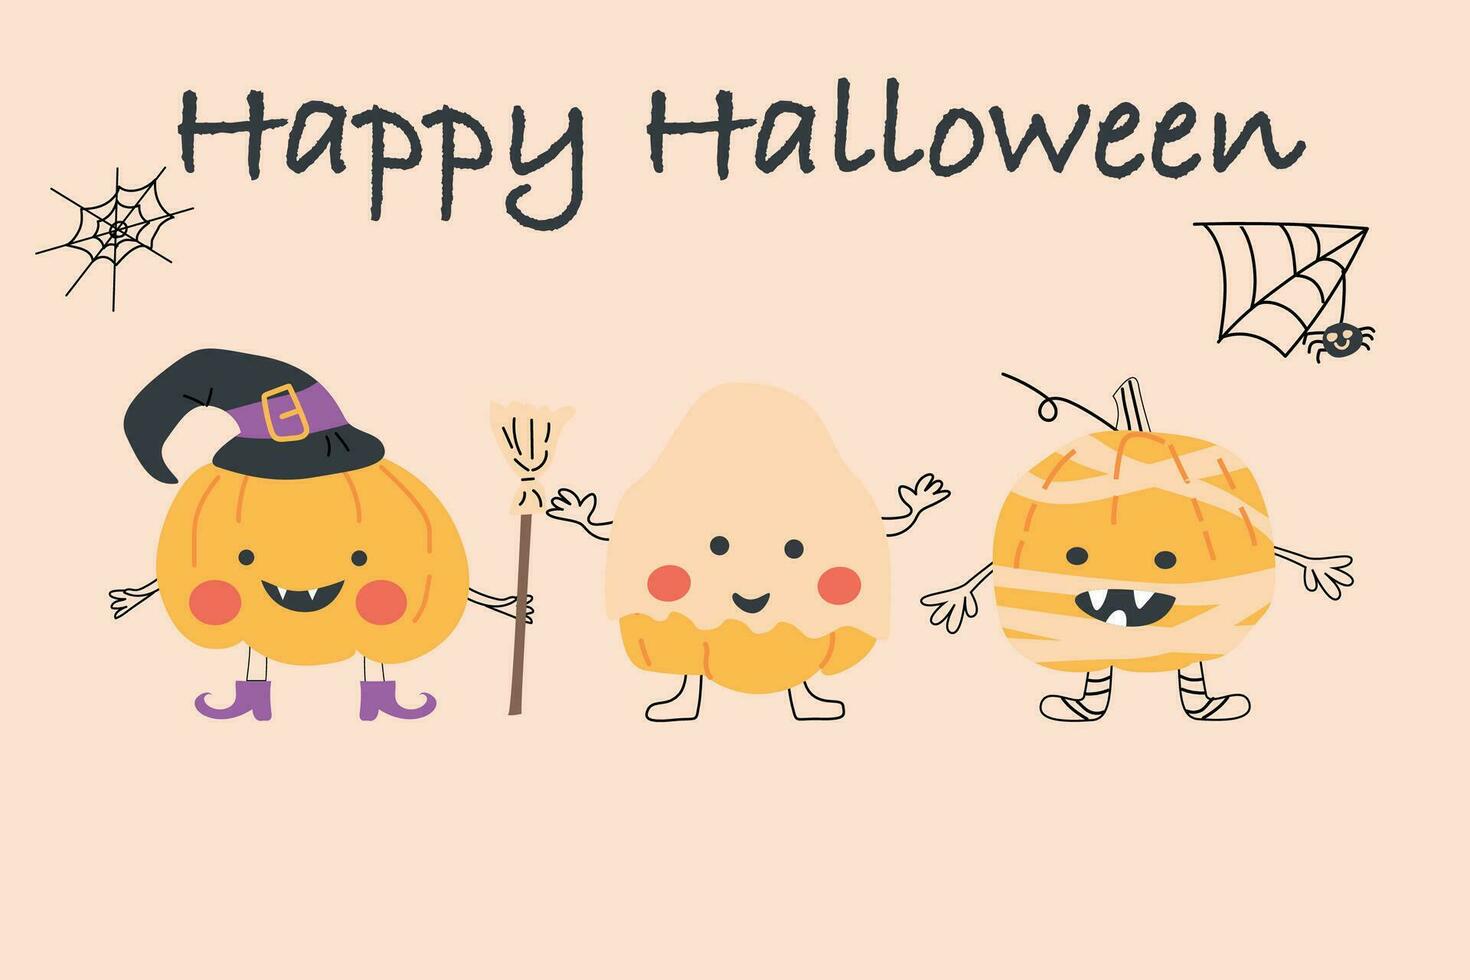 cute pumkin monsters in halloween costume banner vector